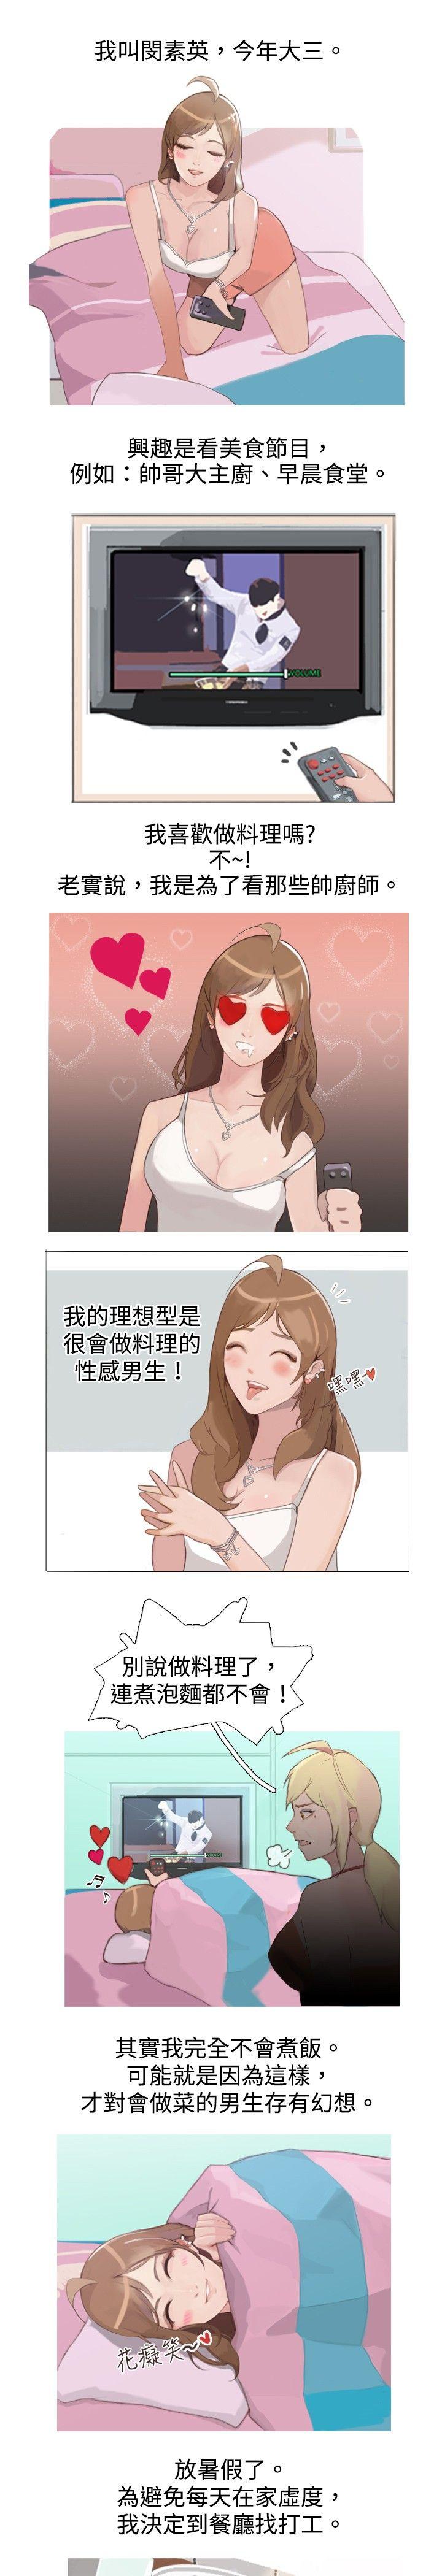 秘密Story  与型男主厨的花癡故事(上) 漫画图片1.jpg